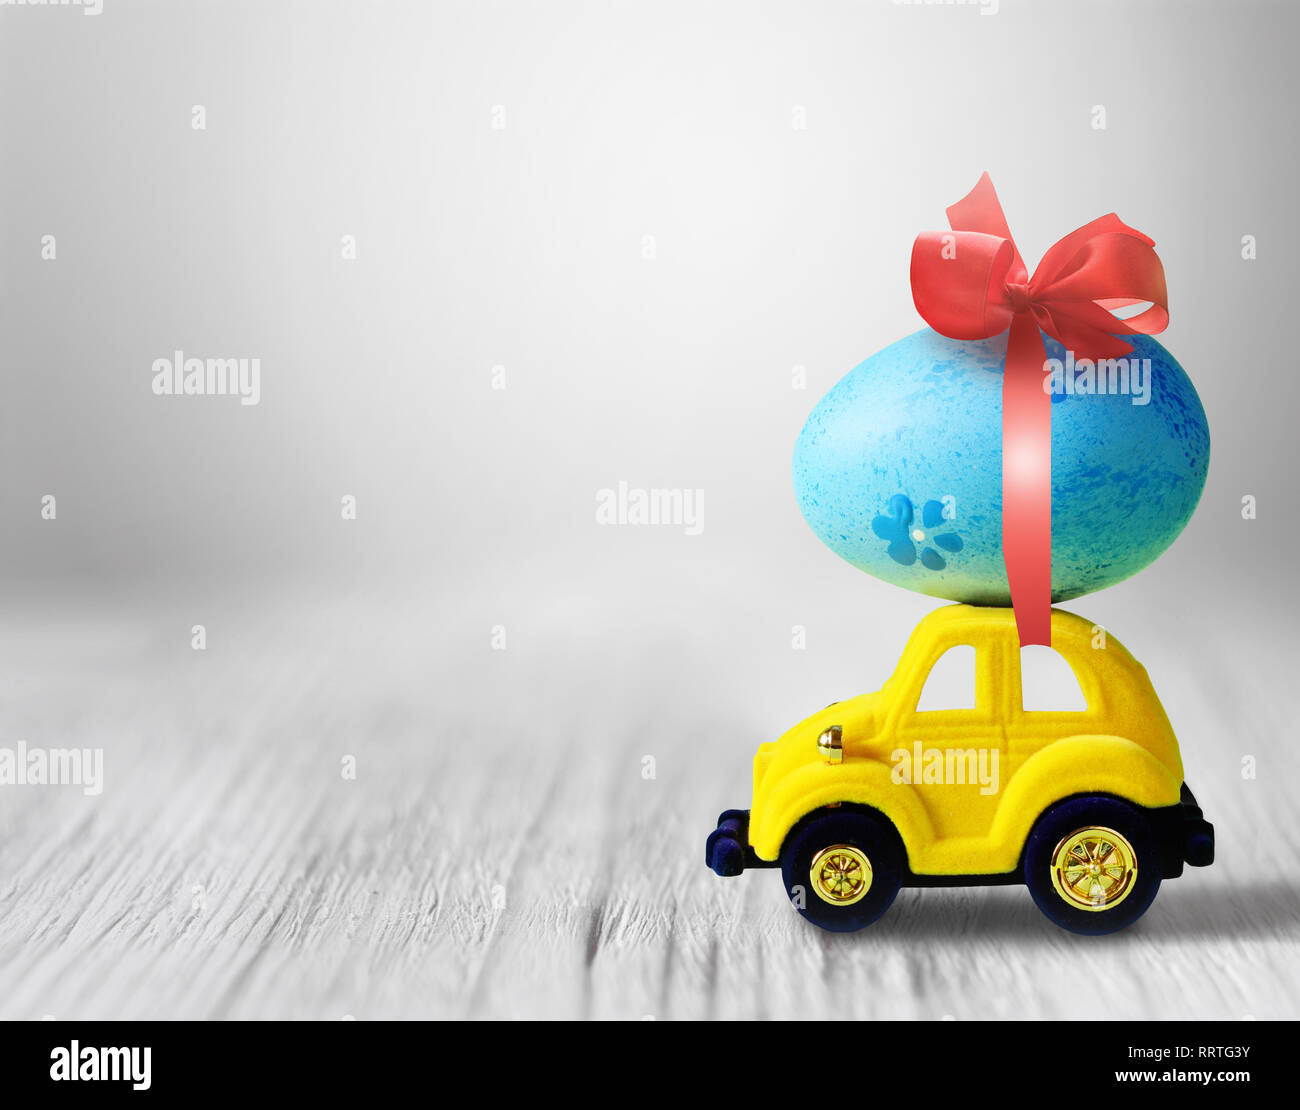 Huevo de pascua y coche de juguete sobre fondo gris, feliz día de Pascua concepto. Foto de stock